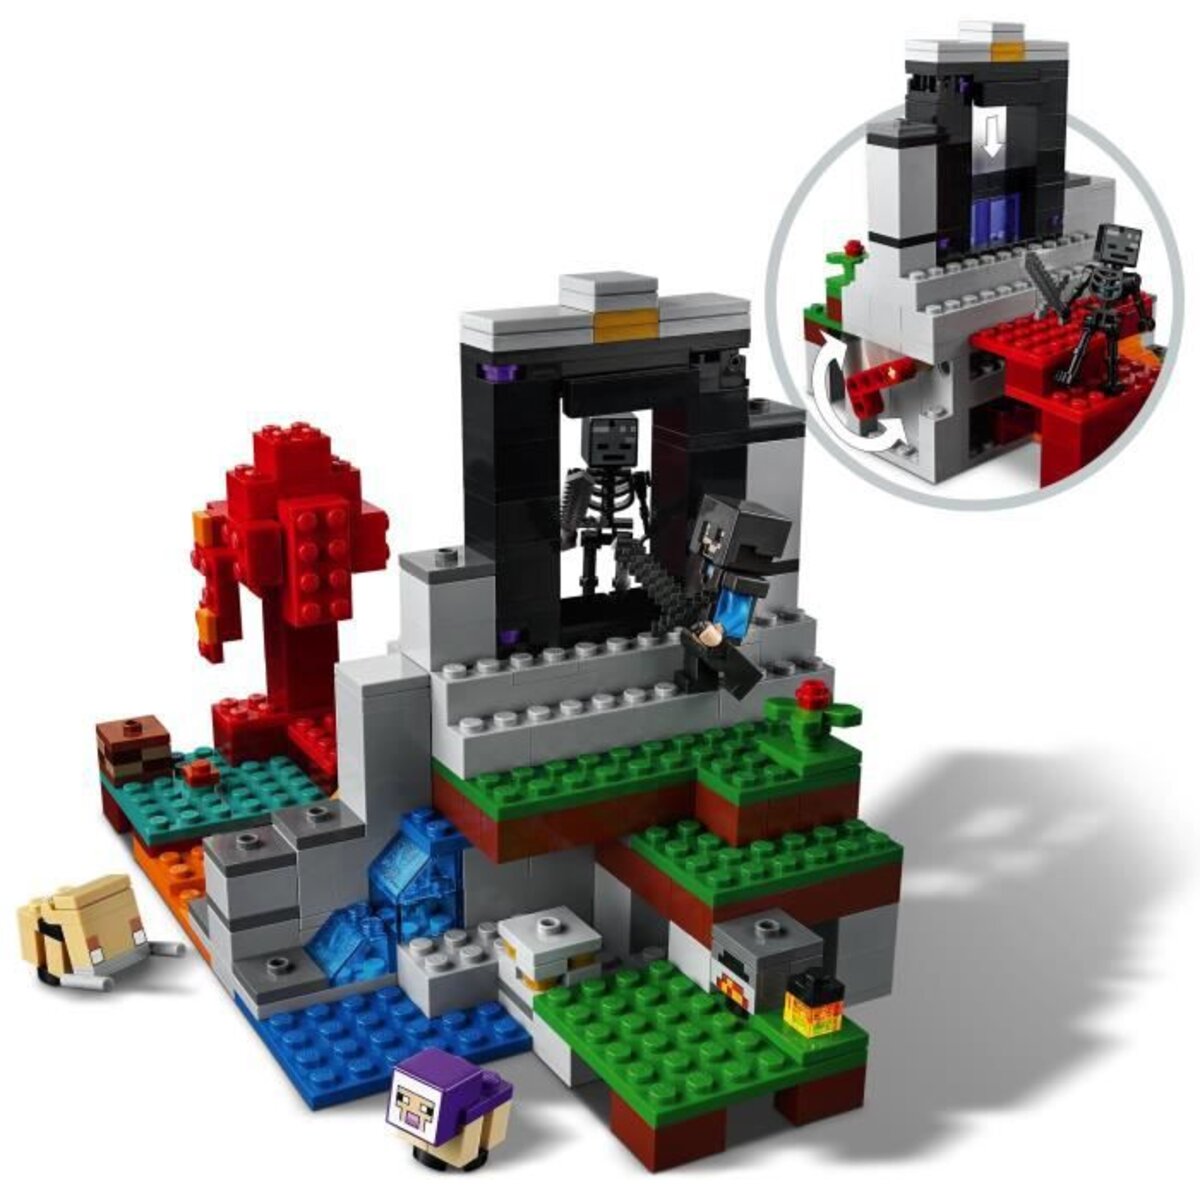 LEGO Minecraft 21172 - Le portail en ruine Jouet pour Enfants 8+ ans pas  cher 